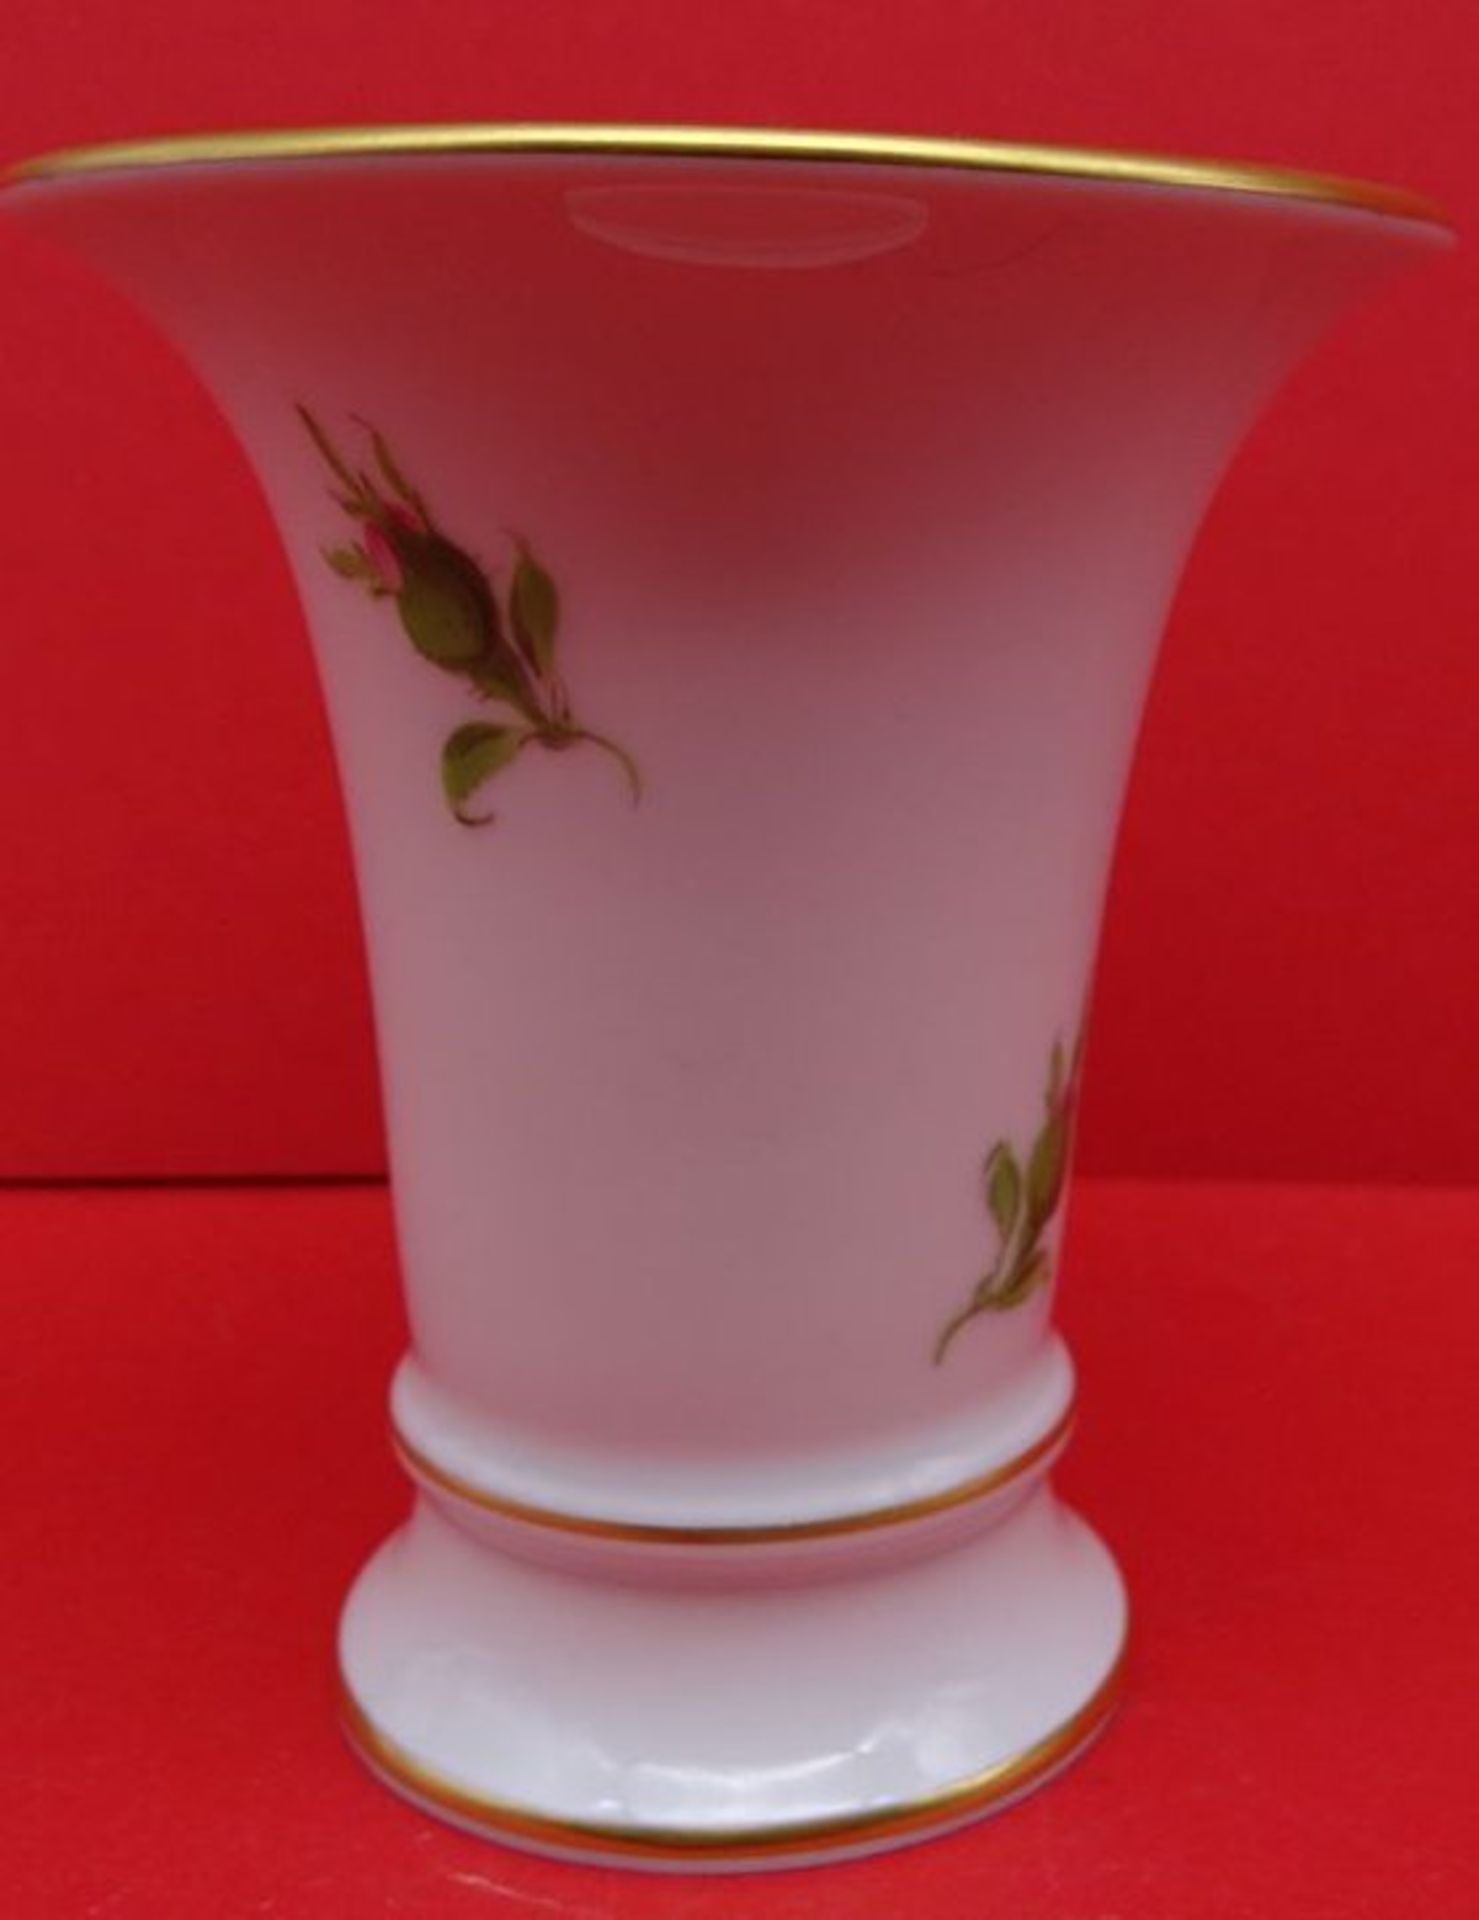 kl. Vase "Meissen" Rote Rose, 1.Wahl, H-9,5 cm - Bild 2 aus 4